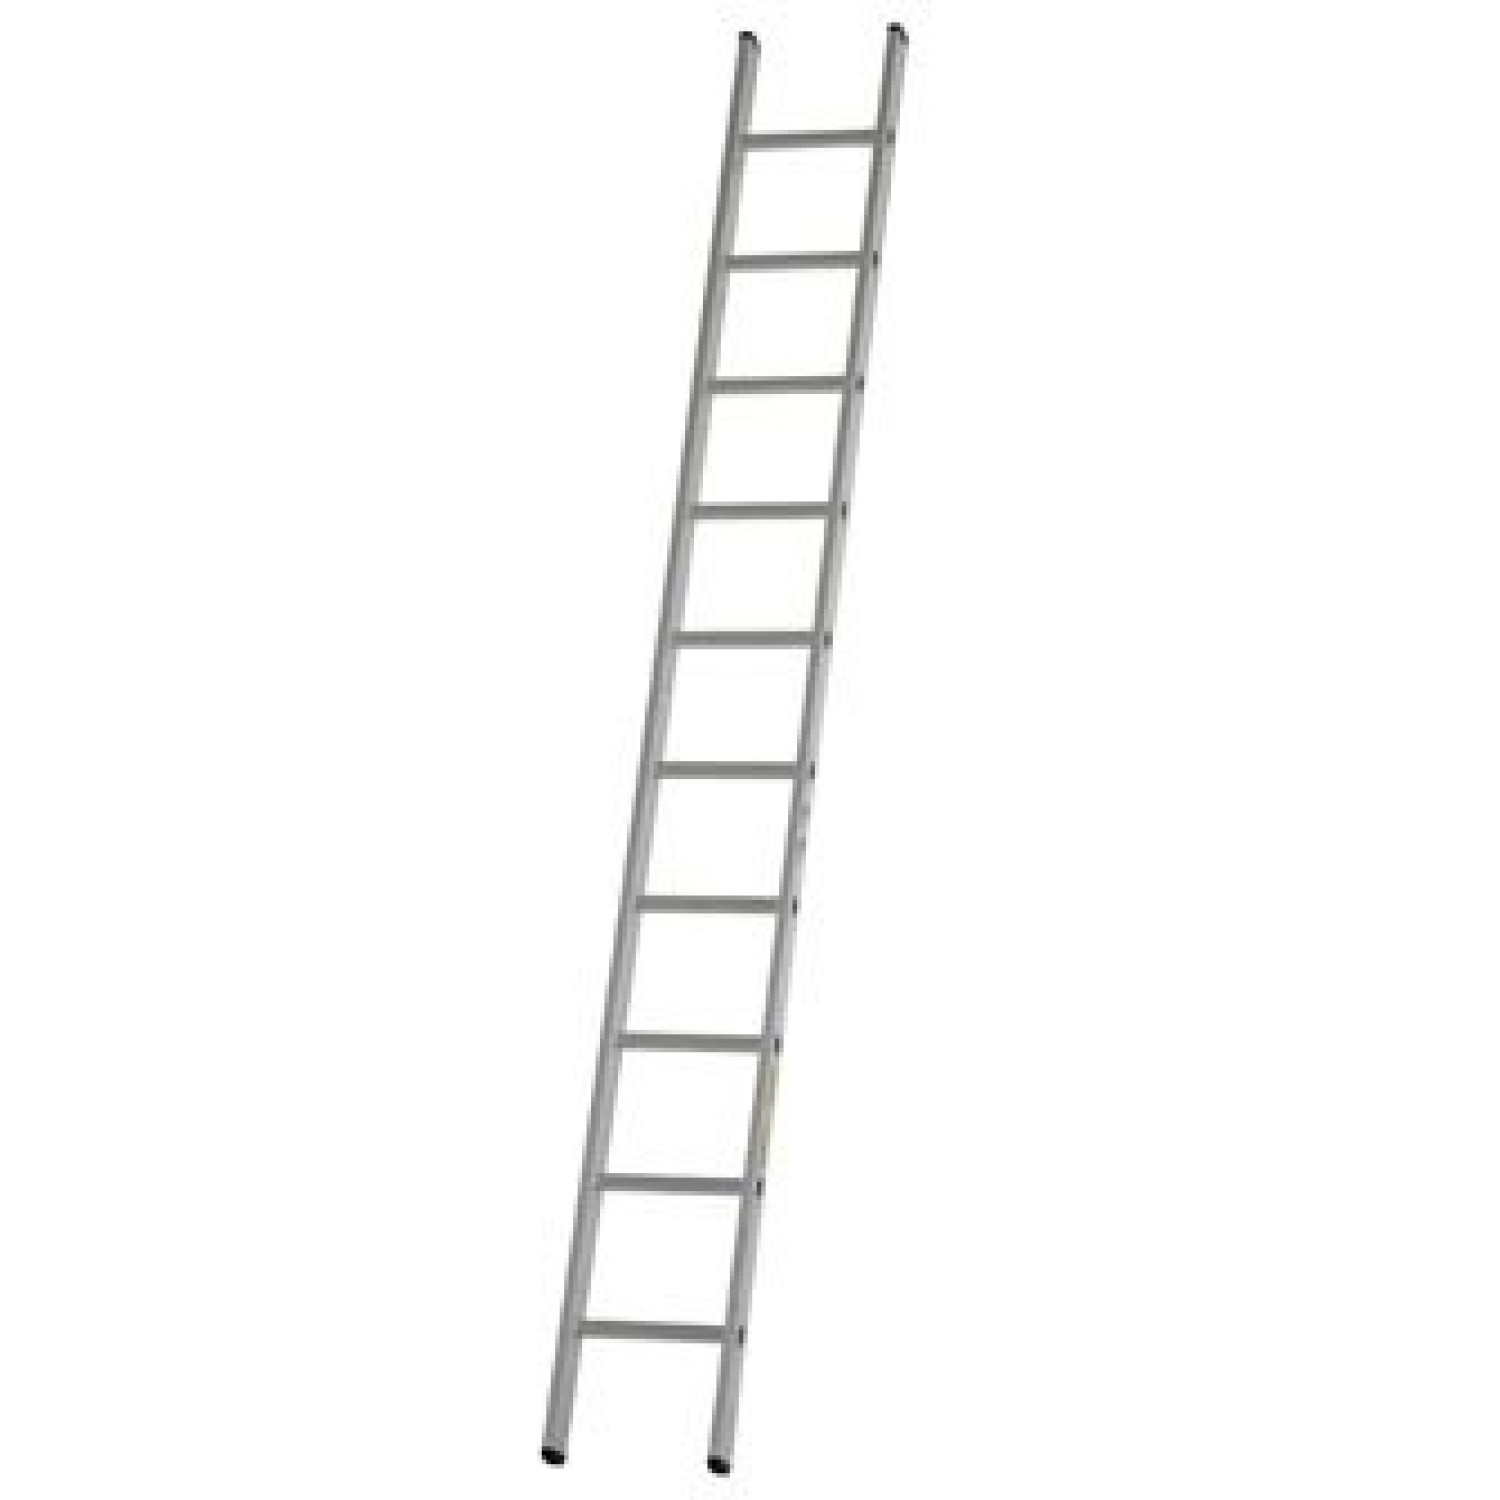 dirks enkele rechte ladder 61 meter ongecoat